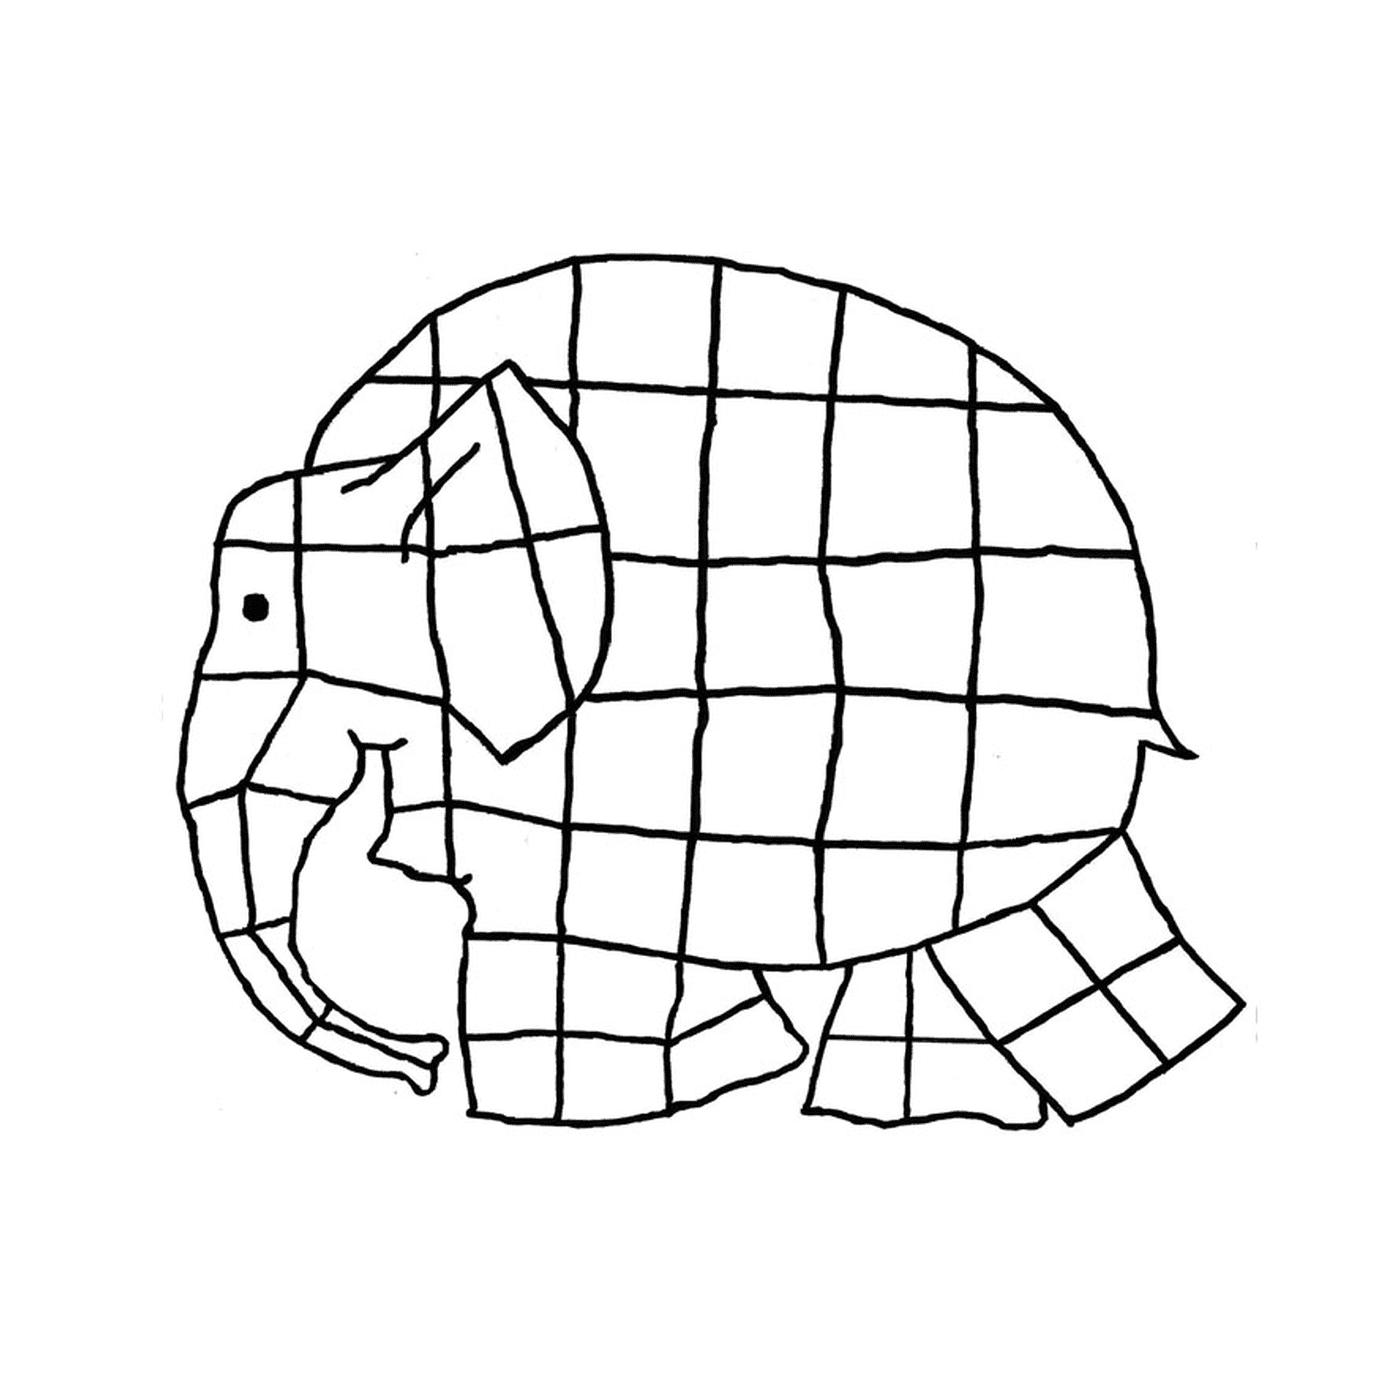  Um elefante feito de quadrados 